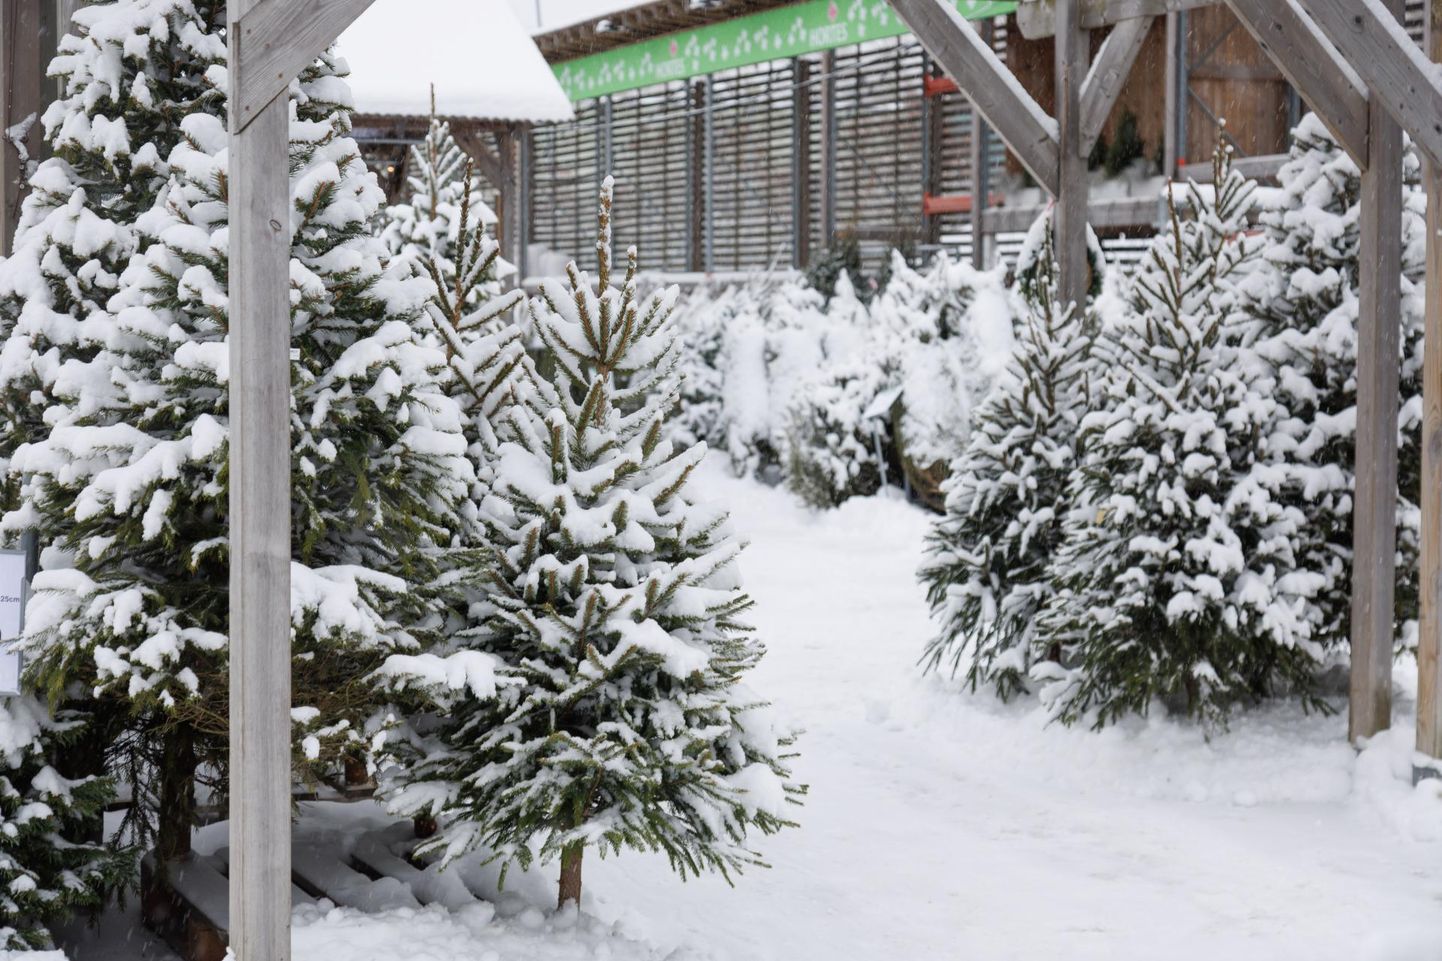 Jõulupuuks sobivad okaspuud Hortese aianduskeskuses.